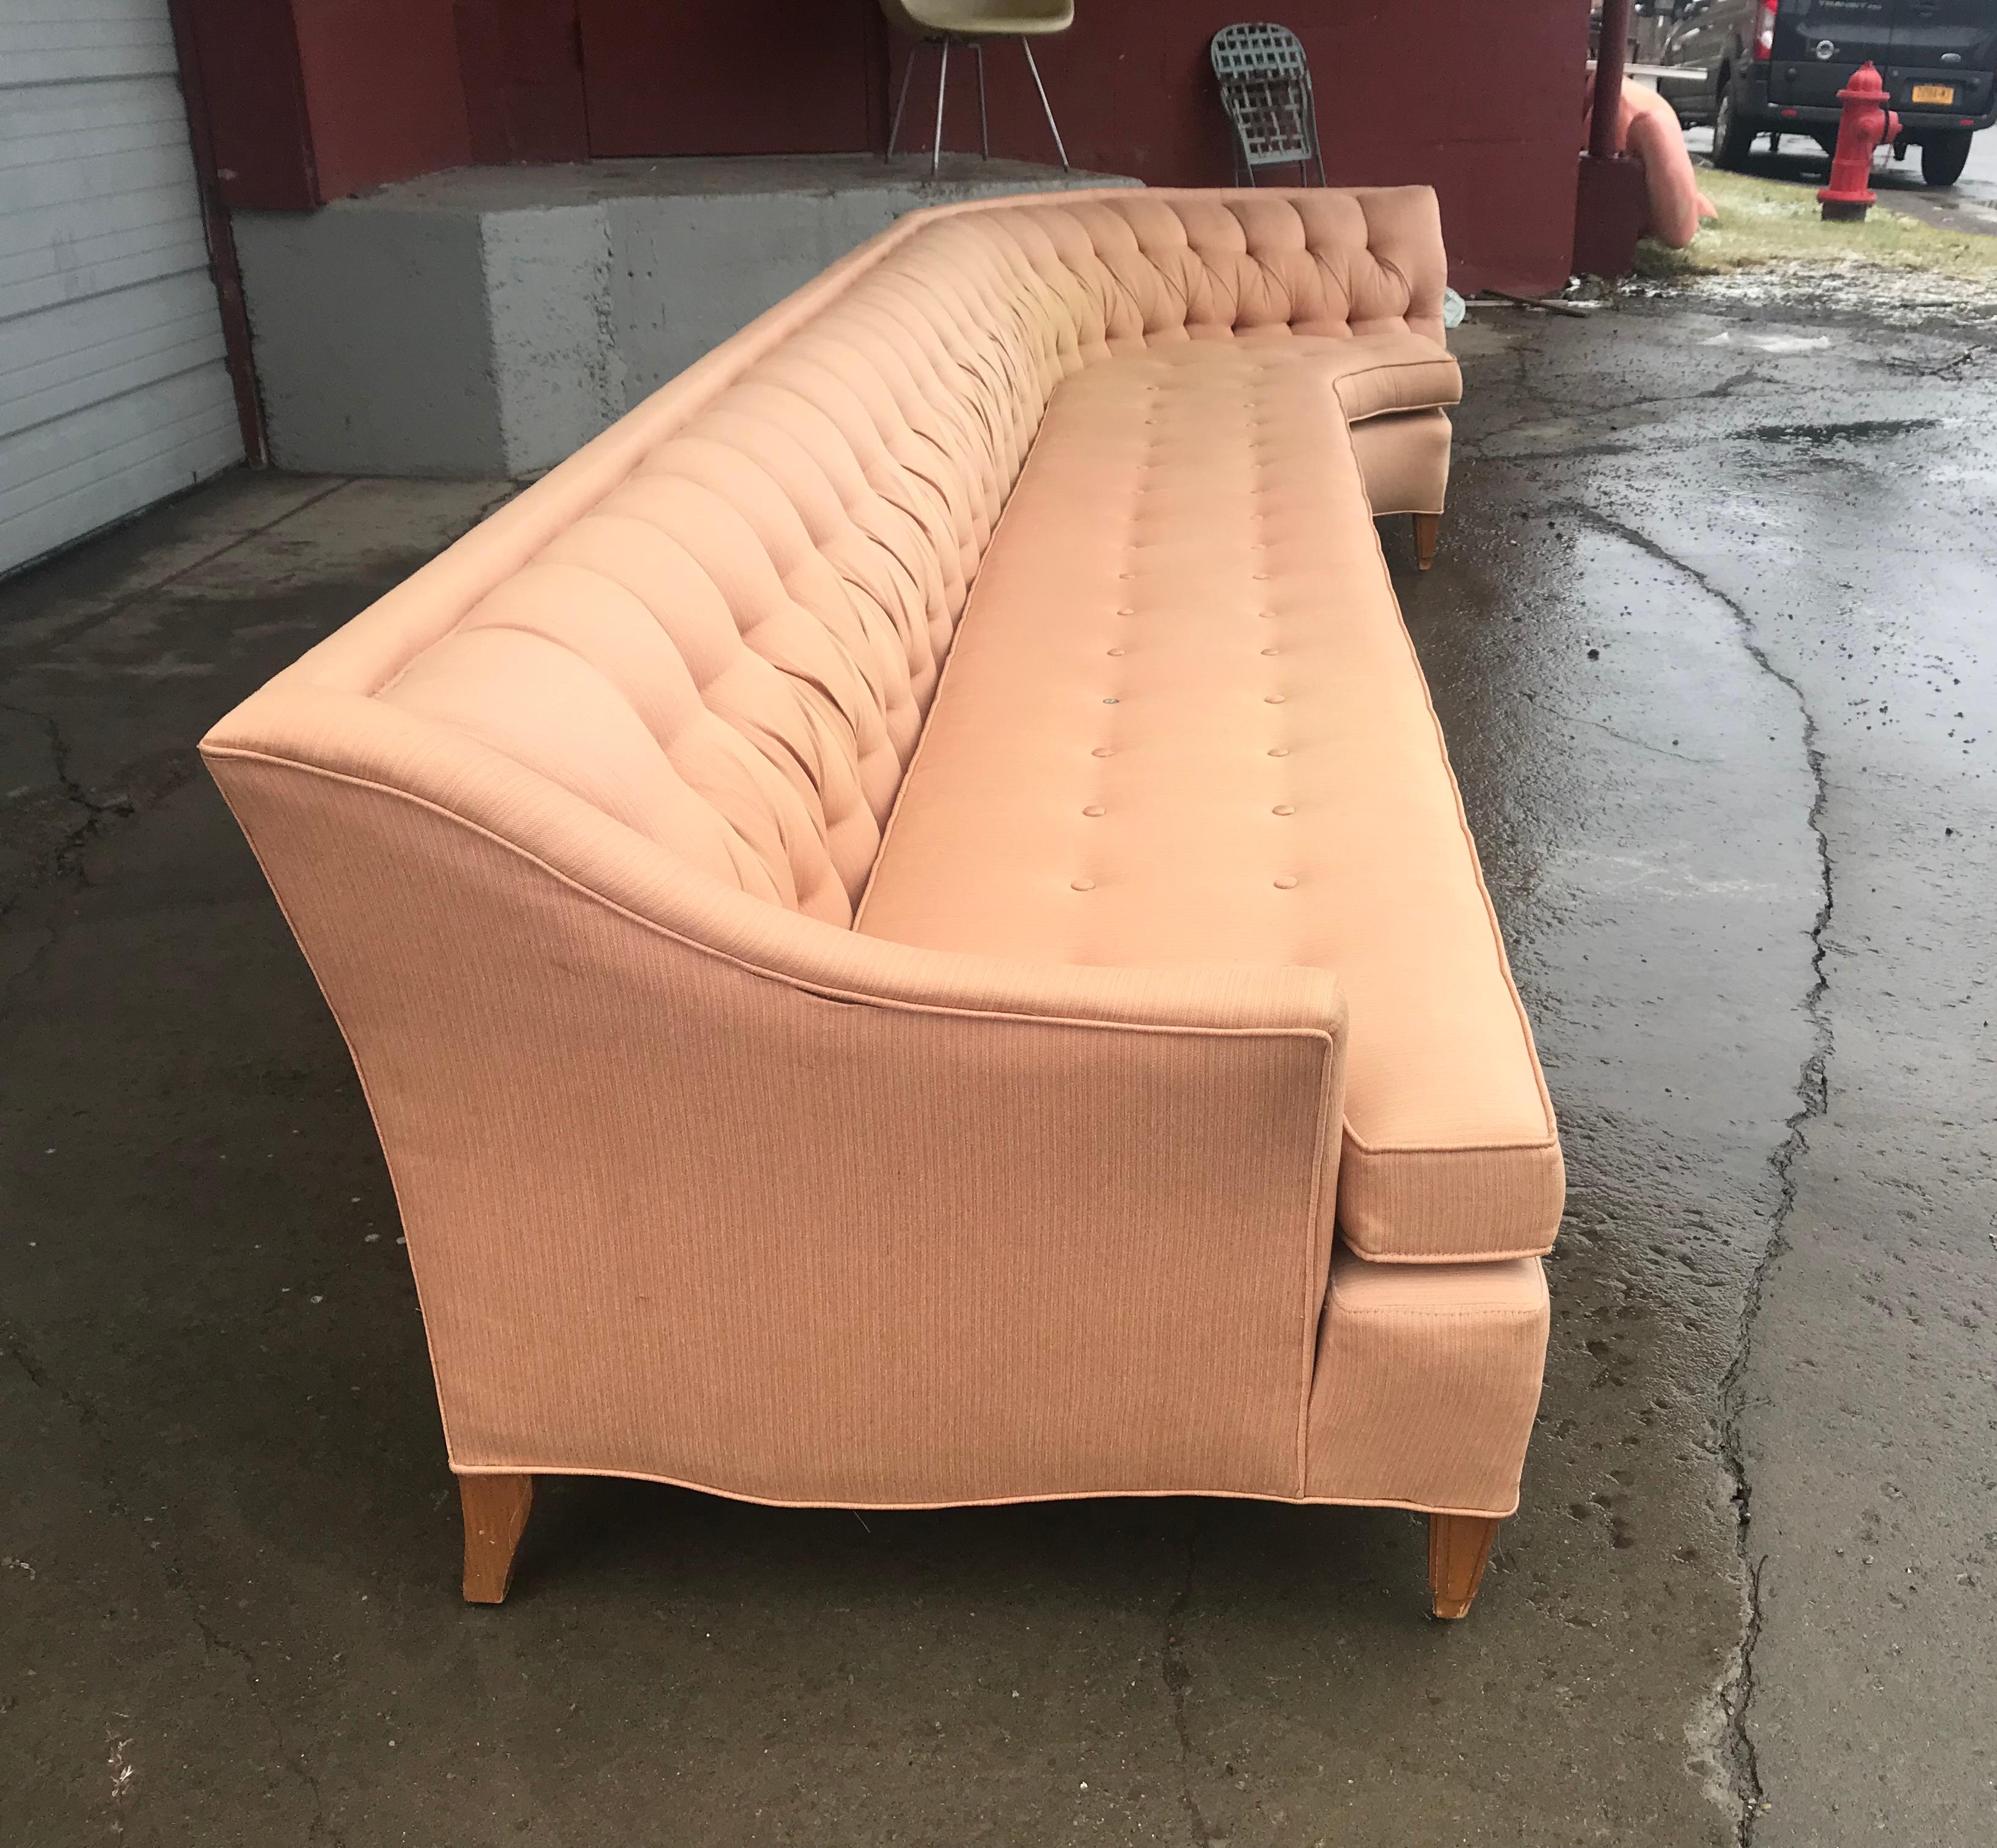 12 foot sofa